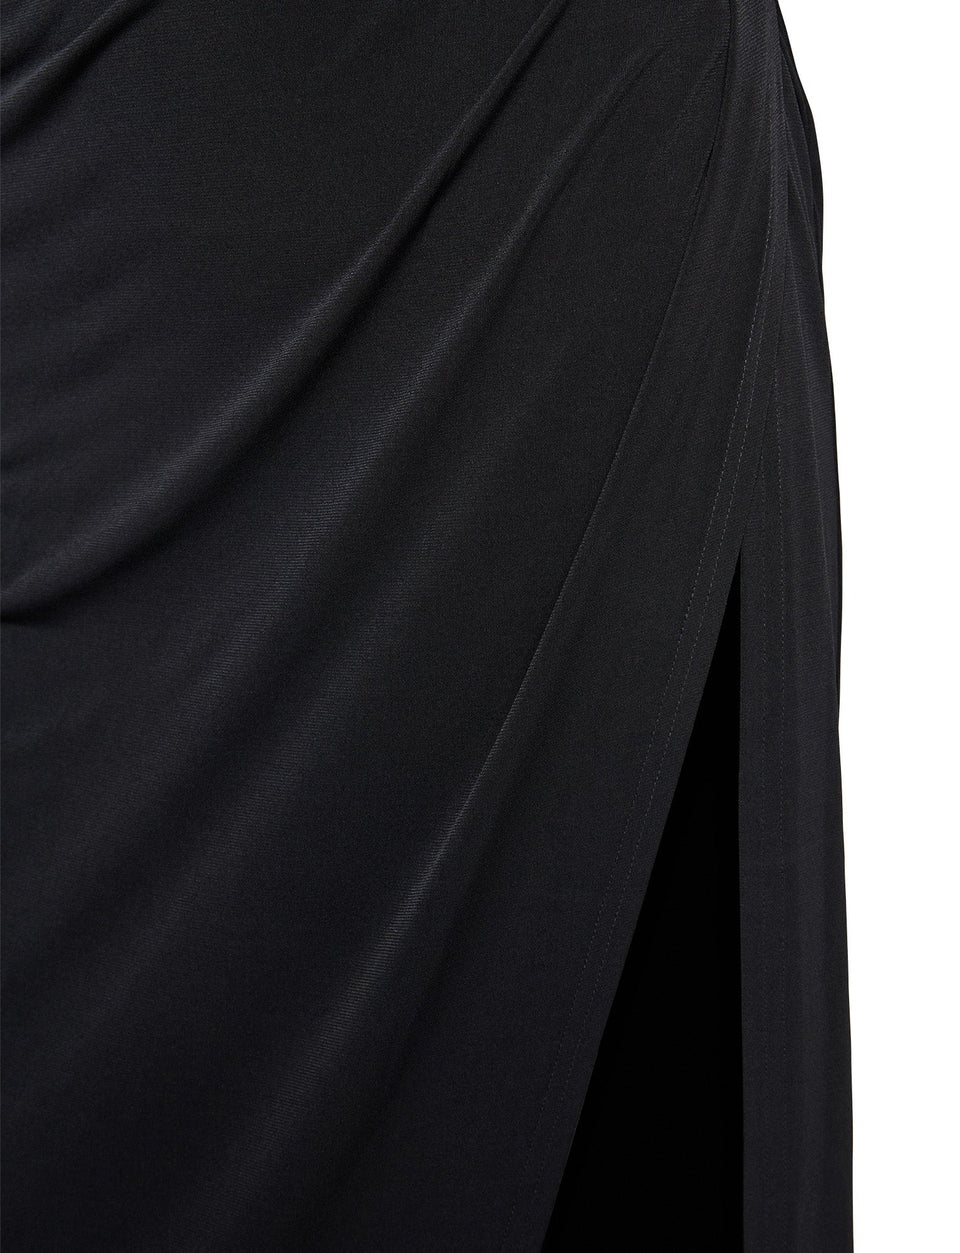 JOSLIN MAXI DRESS - BLACK – Tiger Mist North America